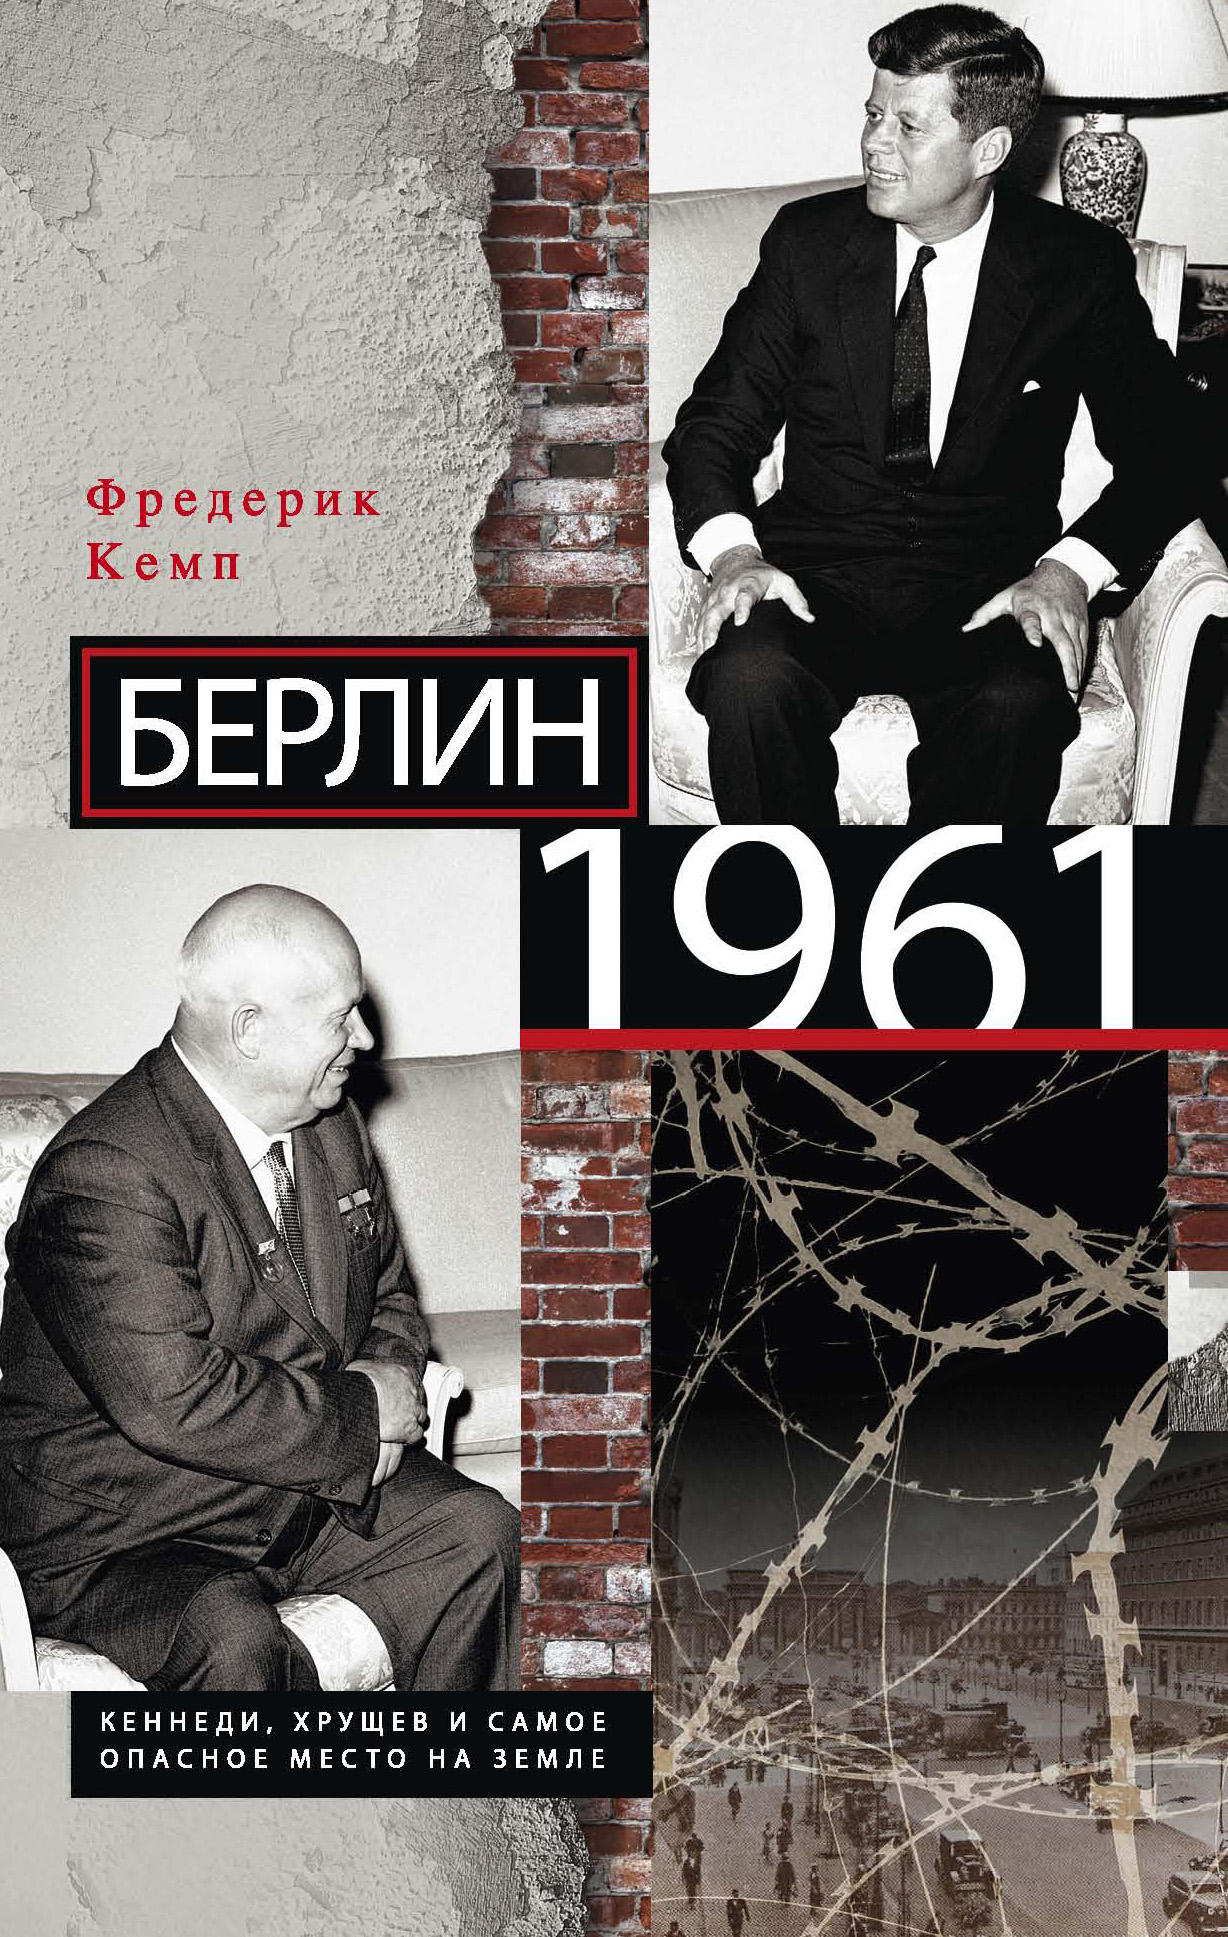 Фредерик Кемп - «Берлин 1961. Кеннеди, Хрущев и самое опасное место на Земле»